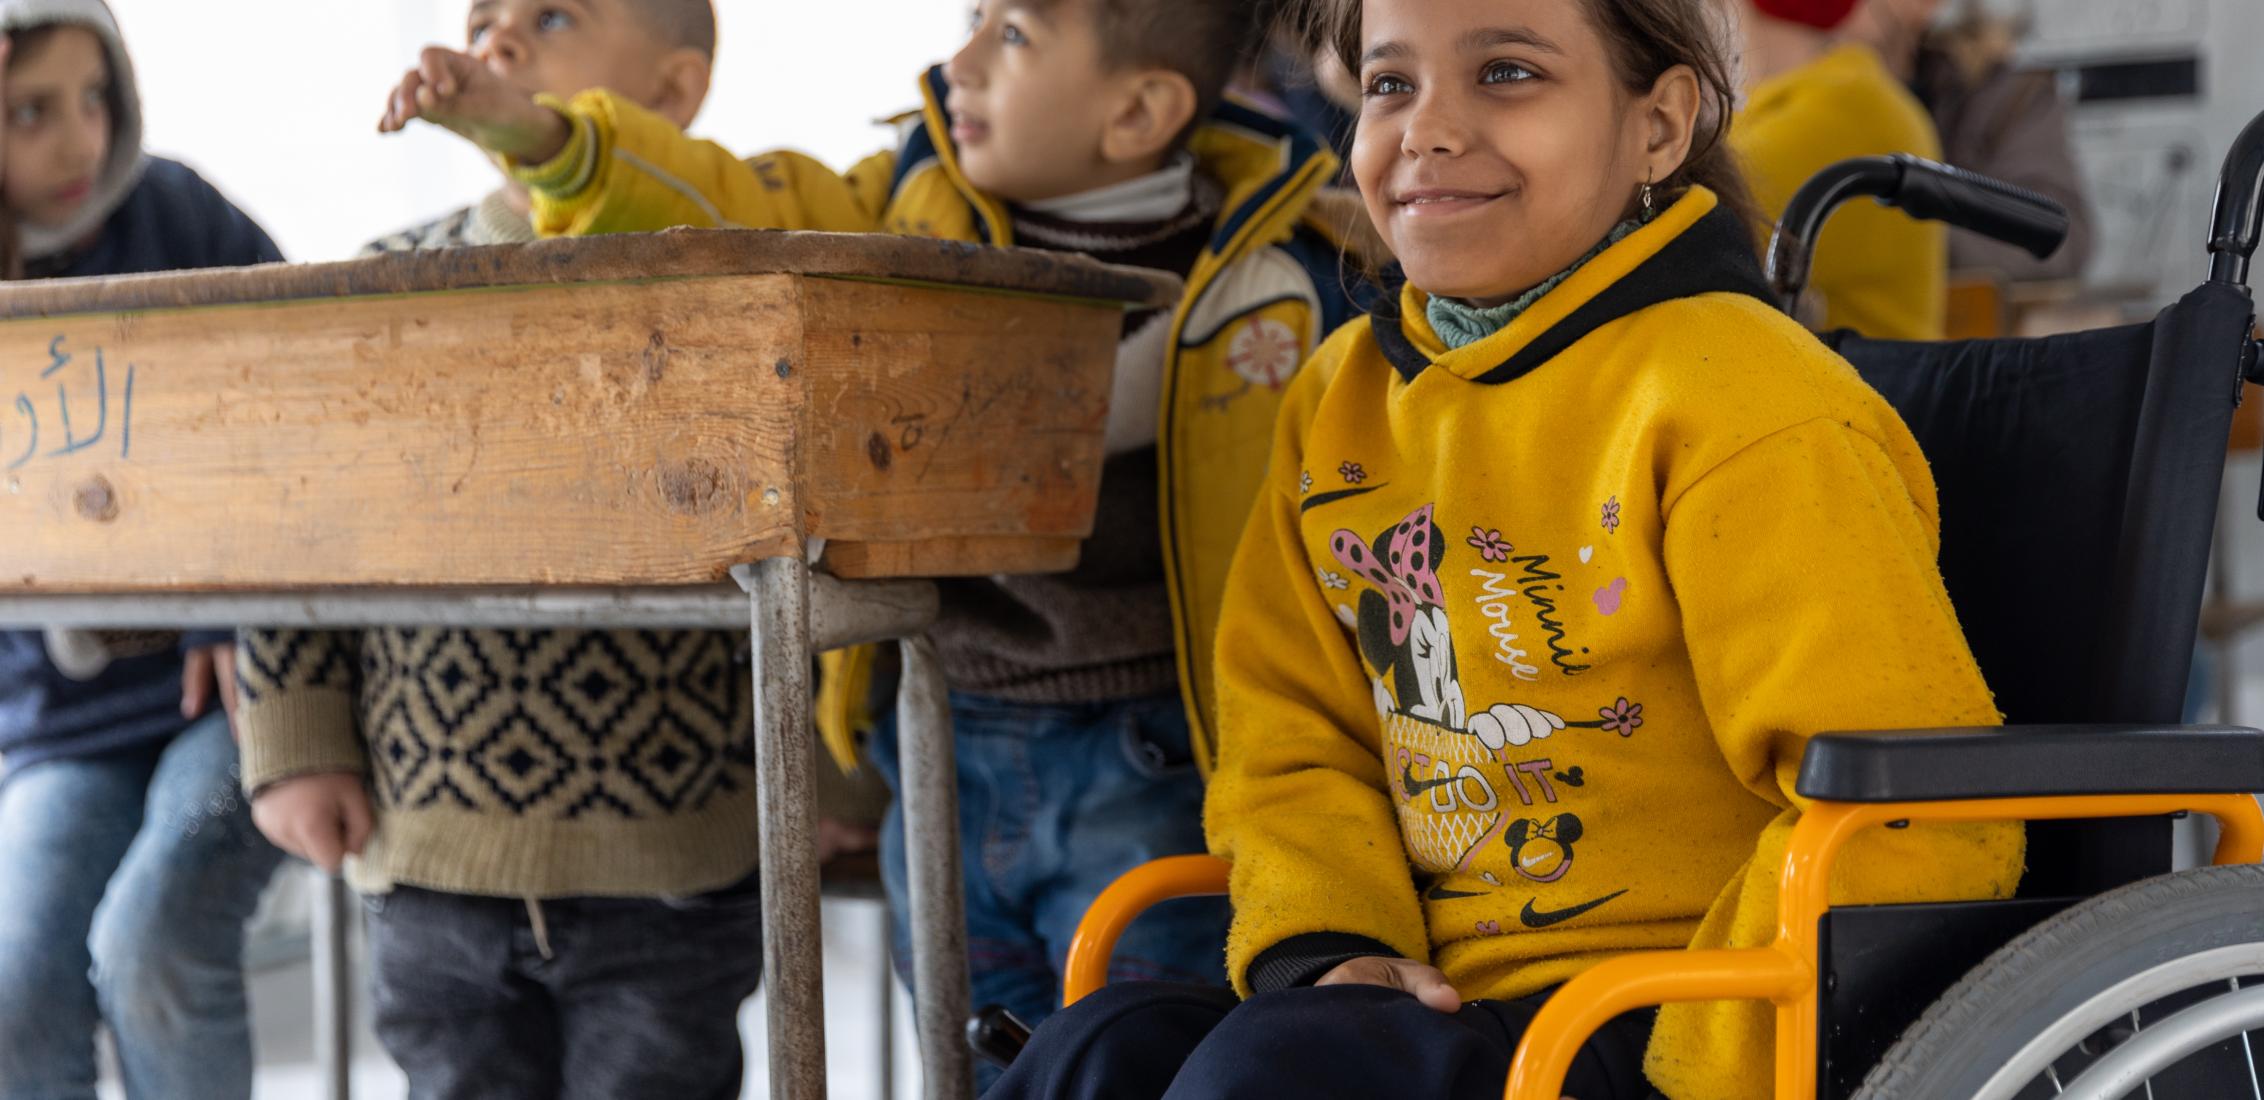 UN0855919/Janji إيمان، 13 عامًا، تشارك في نشاط تعليمي تدعمه اليونيسف في مدرسة تحولت إلى مأوى في مدينة حلب، سوريا، في 15 مارس/آذار 2023. في حلب، إحدى المناطق المتضررة إلى حد كبير من الزلازل القاتلة، قامت اليونيسف، مع شركائها، الوصول إلى الأطفال المتضررين، بما في ذلك الأطفال ذوي الإعاقة، من خلال الأنشطة التعليمية الترفيهية والفصول العلاجية التعويضية لمساعدتهم على تعويض ما فقدوه من التعلم واستعادة الشعور بالاستقرار في حياتهم.. 